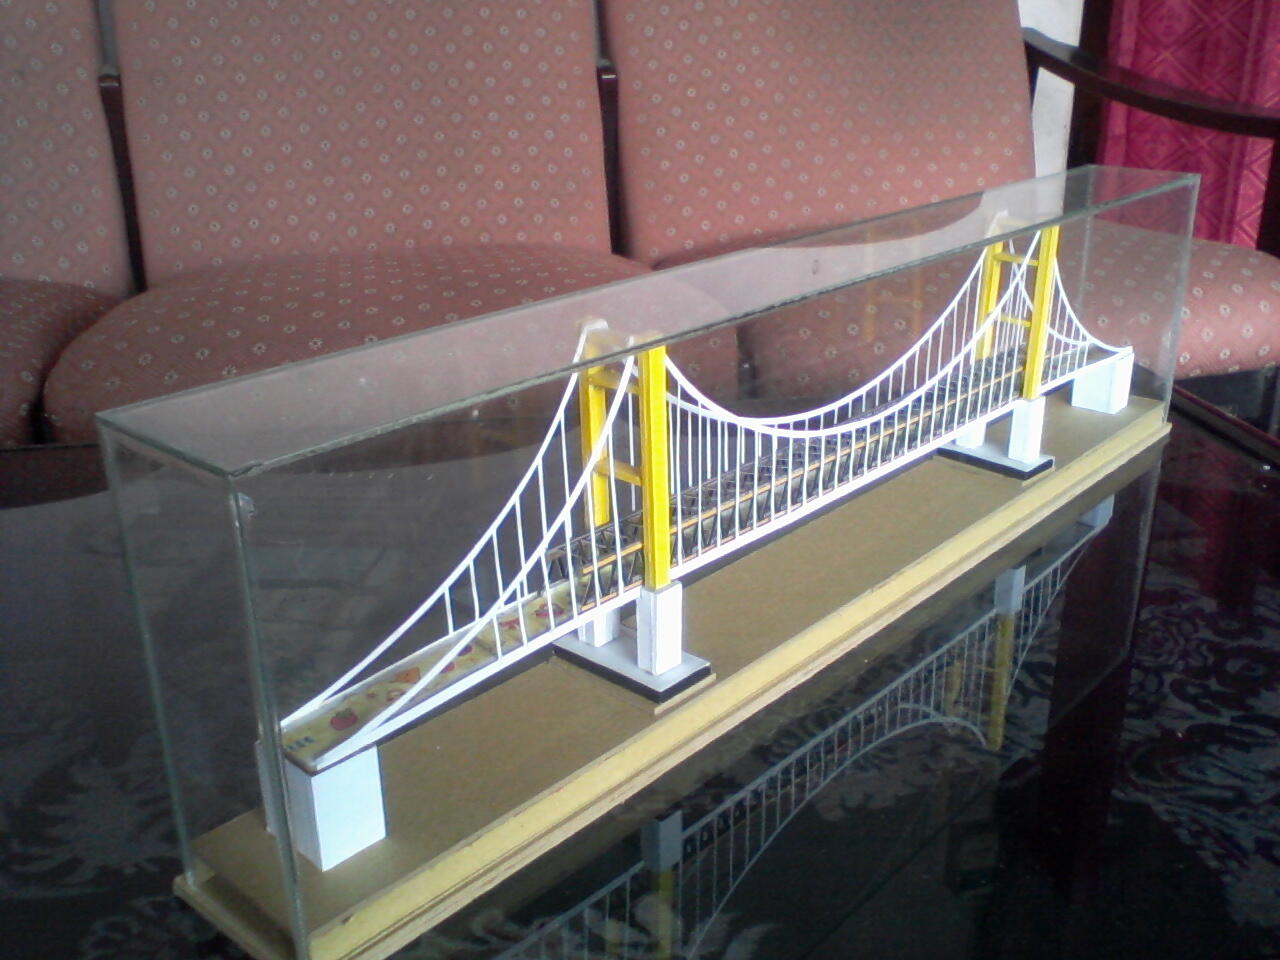 Terjual Miniatur Jembatan Gantung Ceria KASKUS